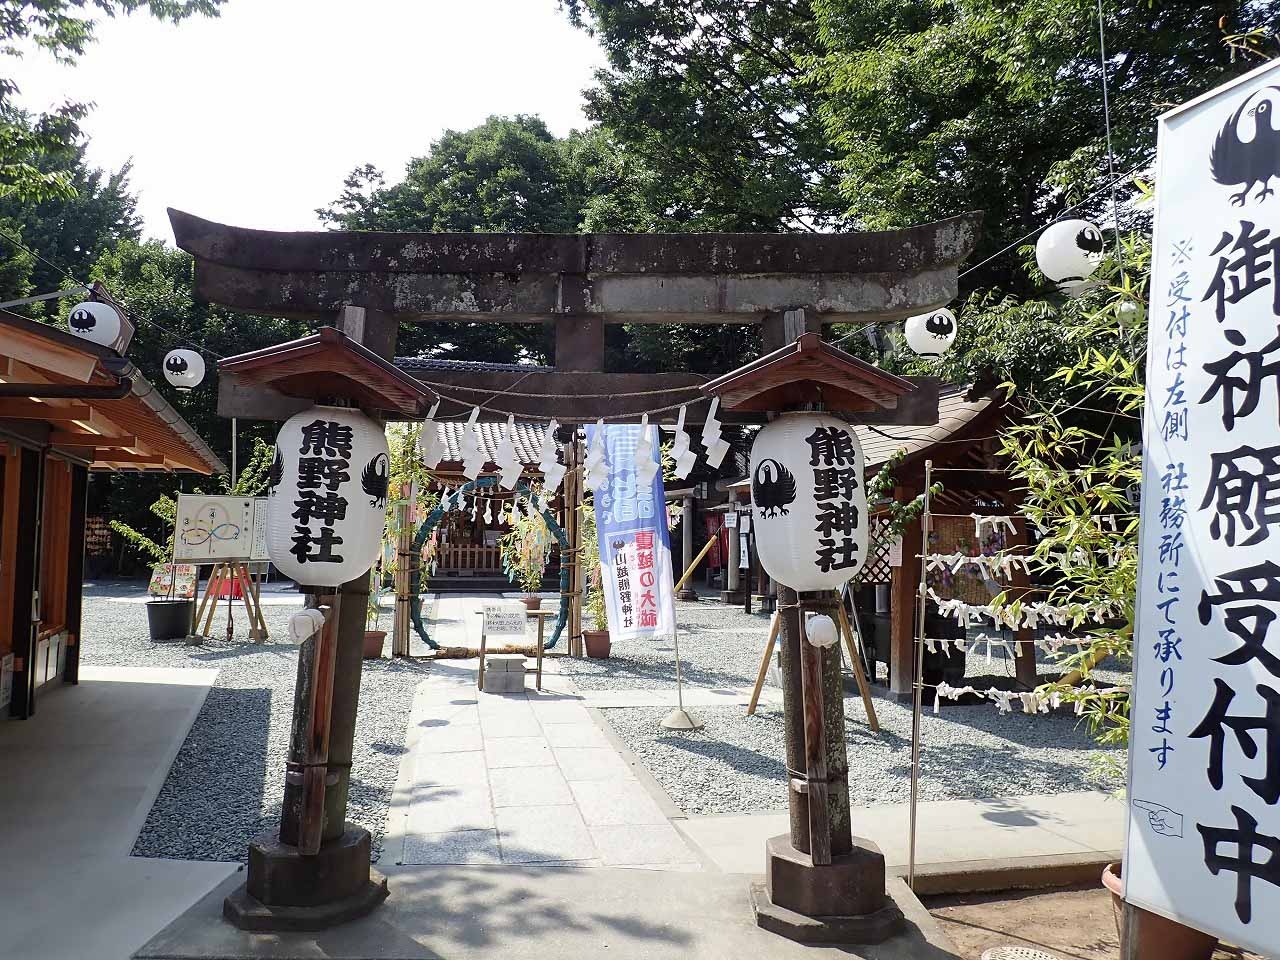 テレビで紹介された川越熊野神社